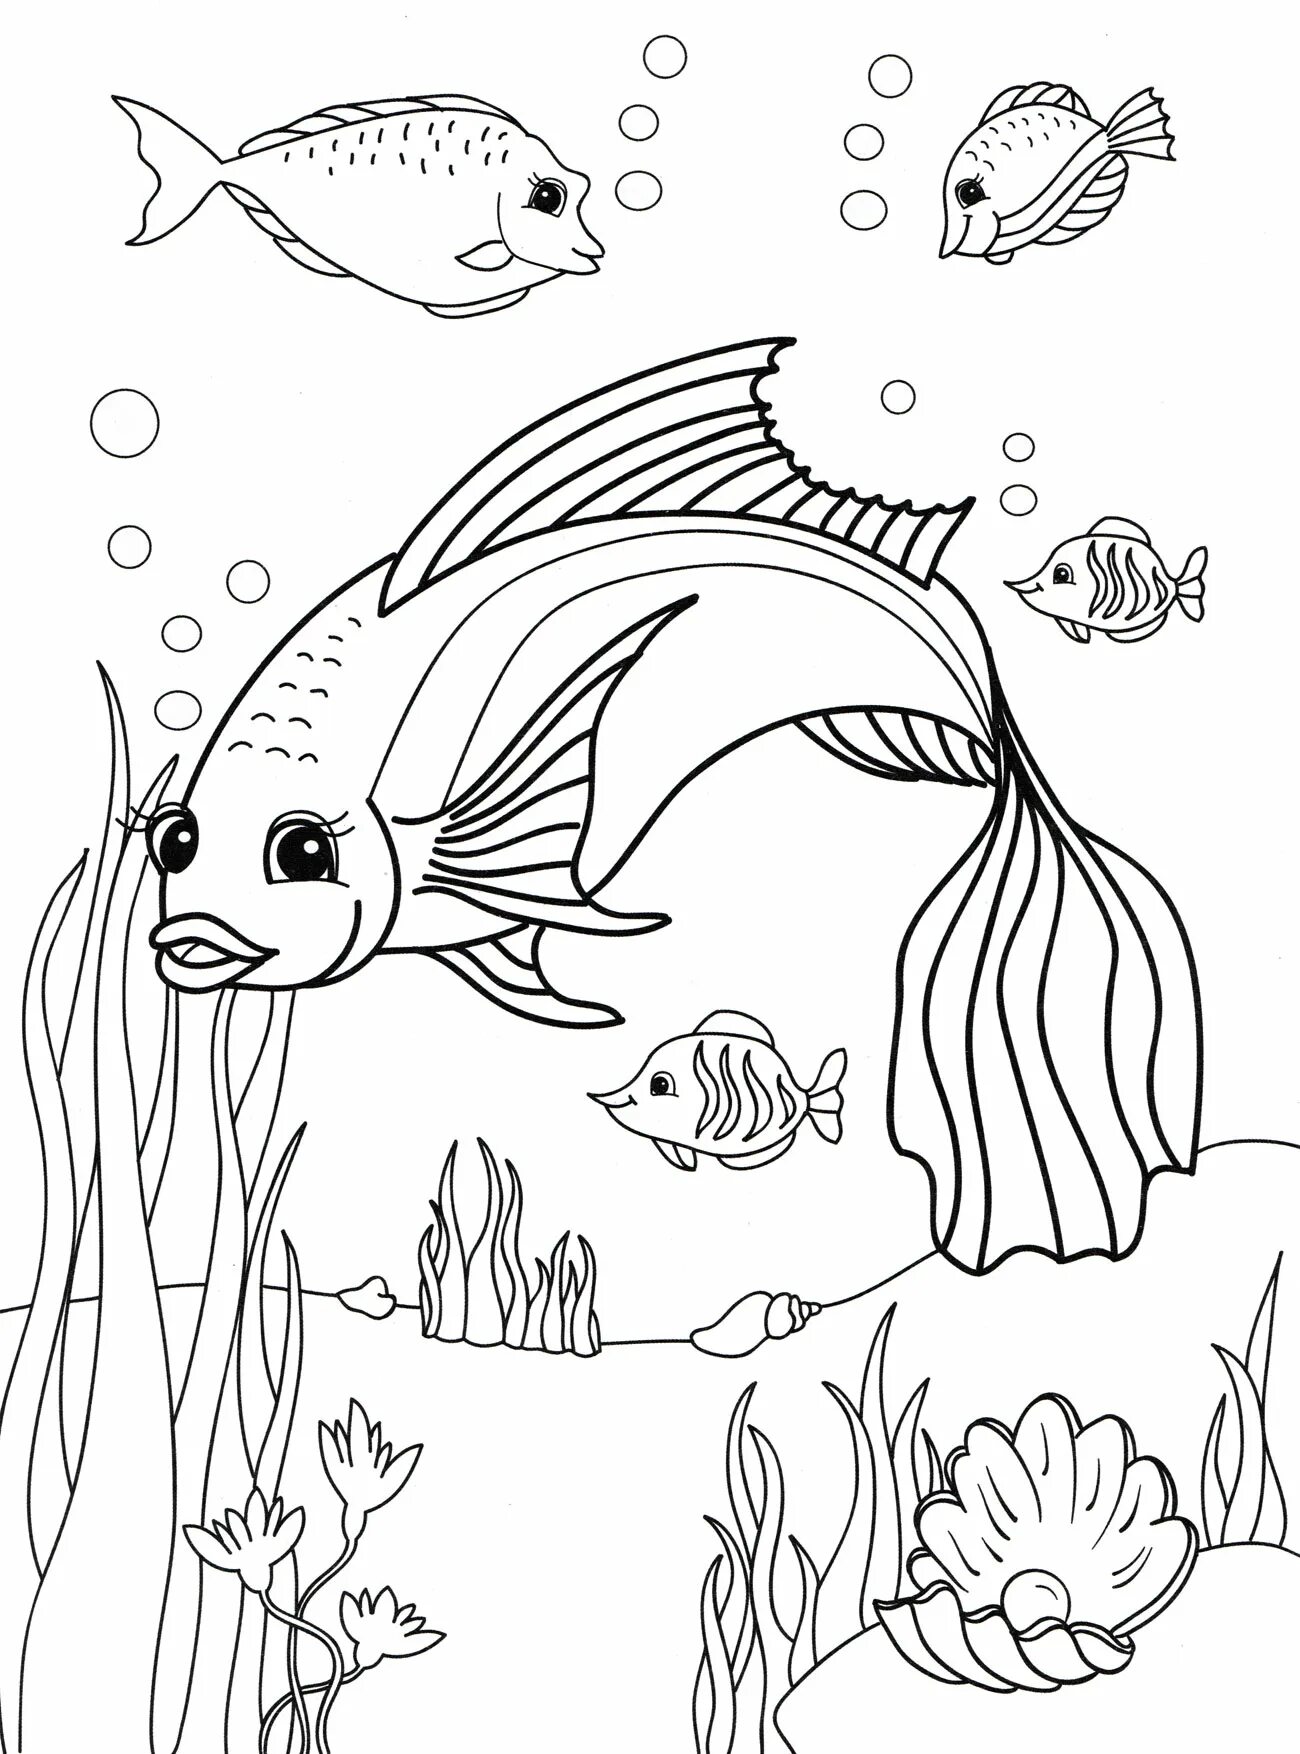 Раскраска рыбы для детей 6 лет. Рыбка раскраска для детей. Рыба раскраска для детей. Морские рыбы раскраска для детей. Рыбка картинка для детей раскраска.